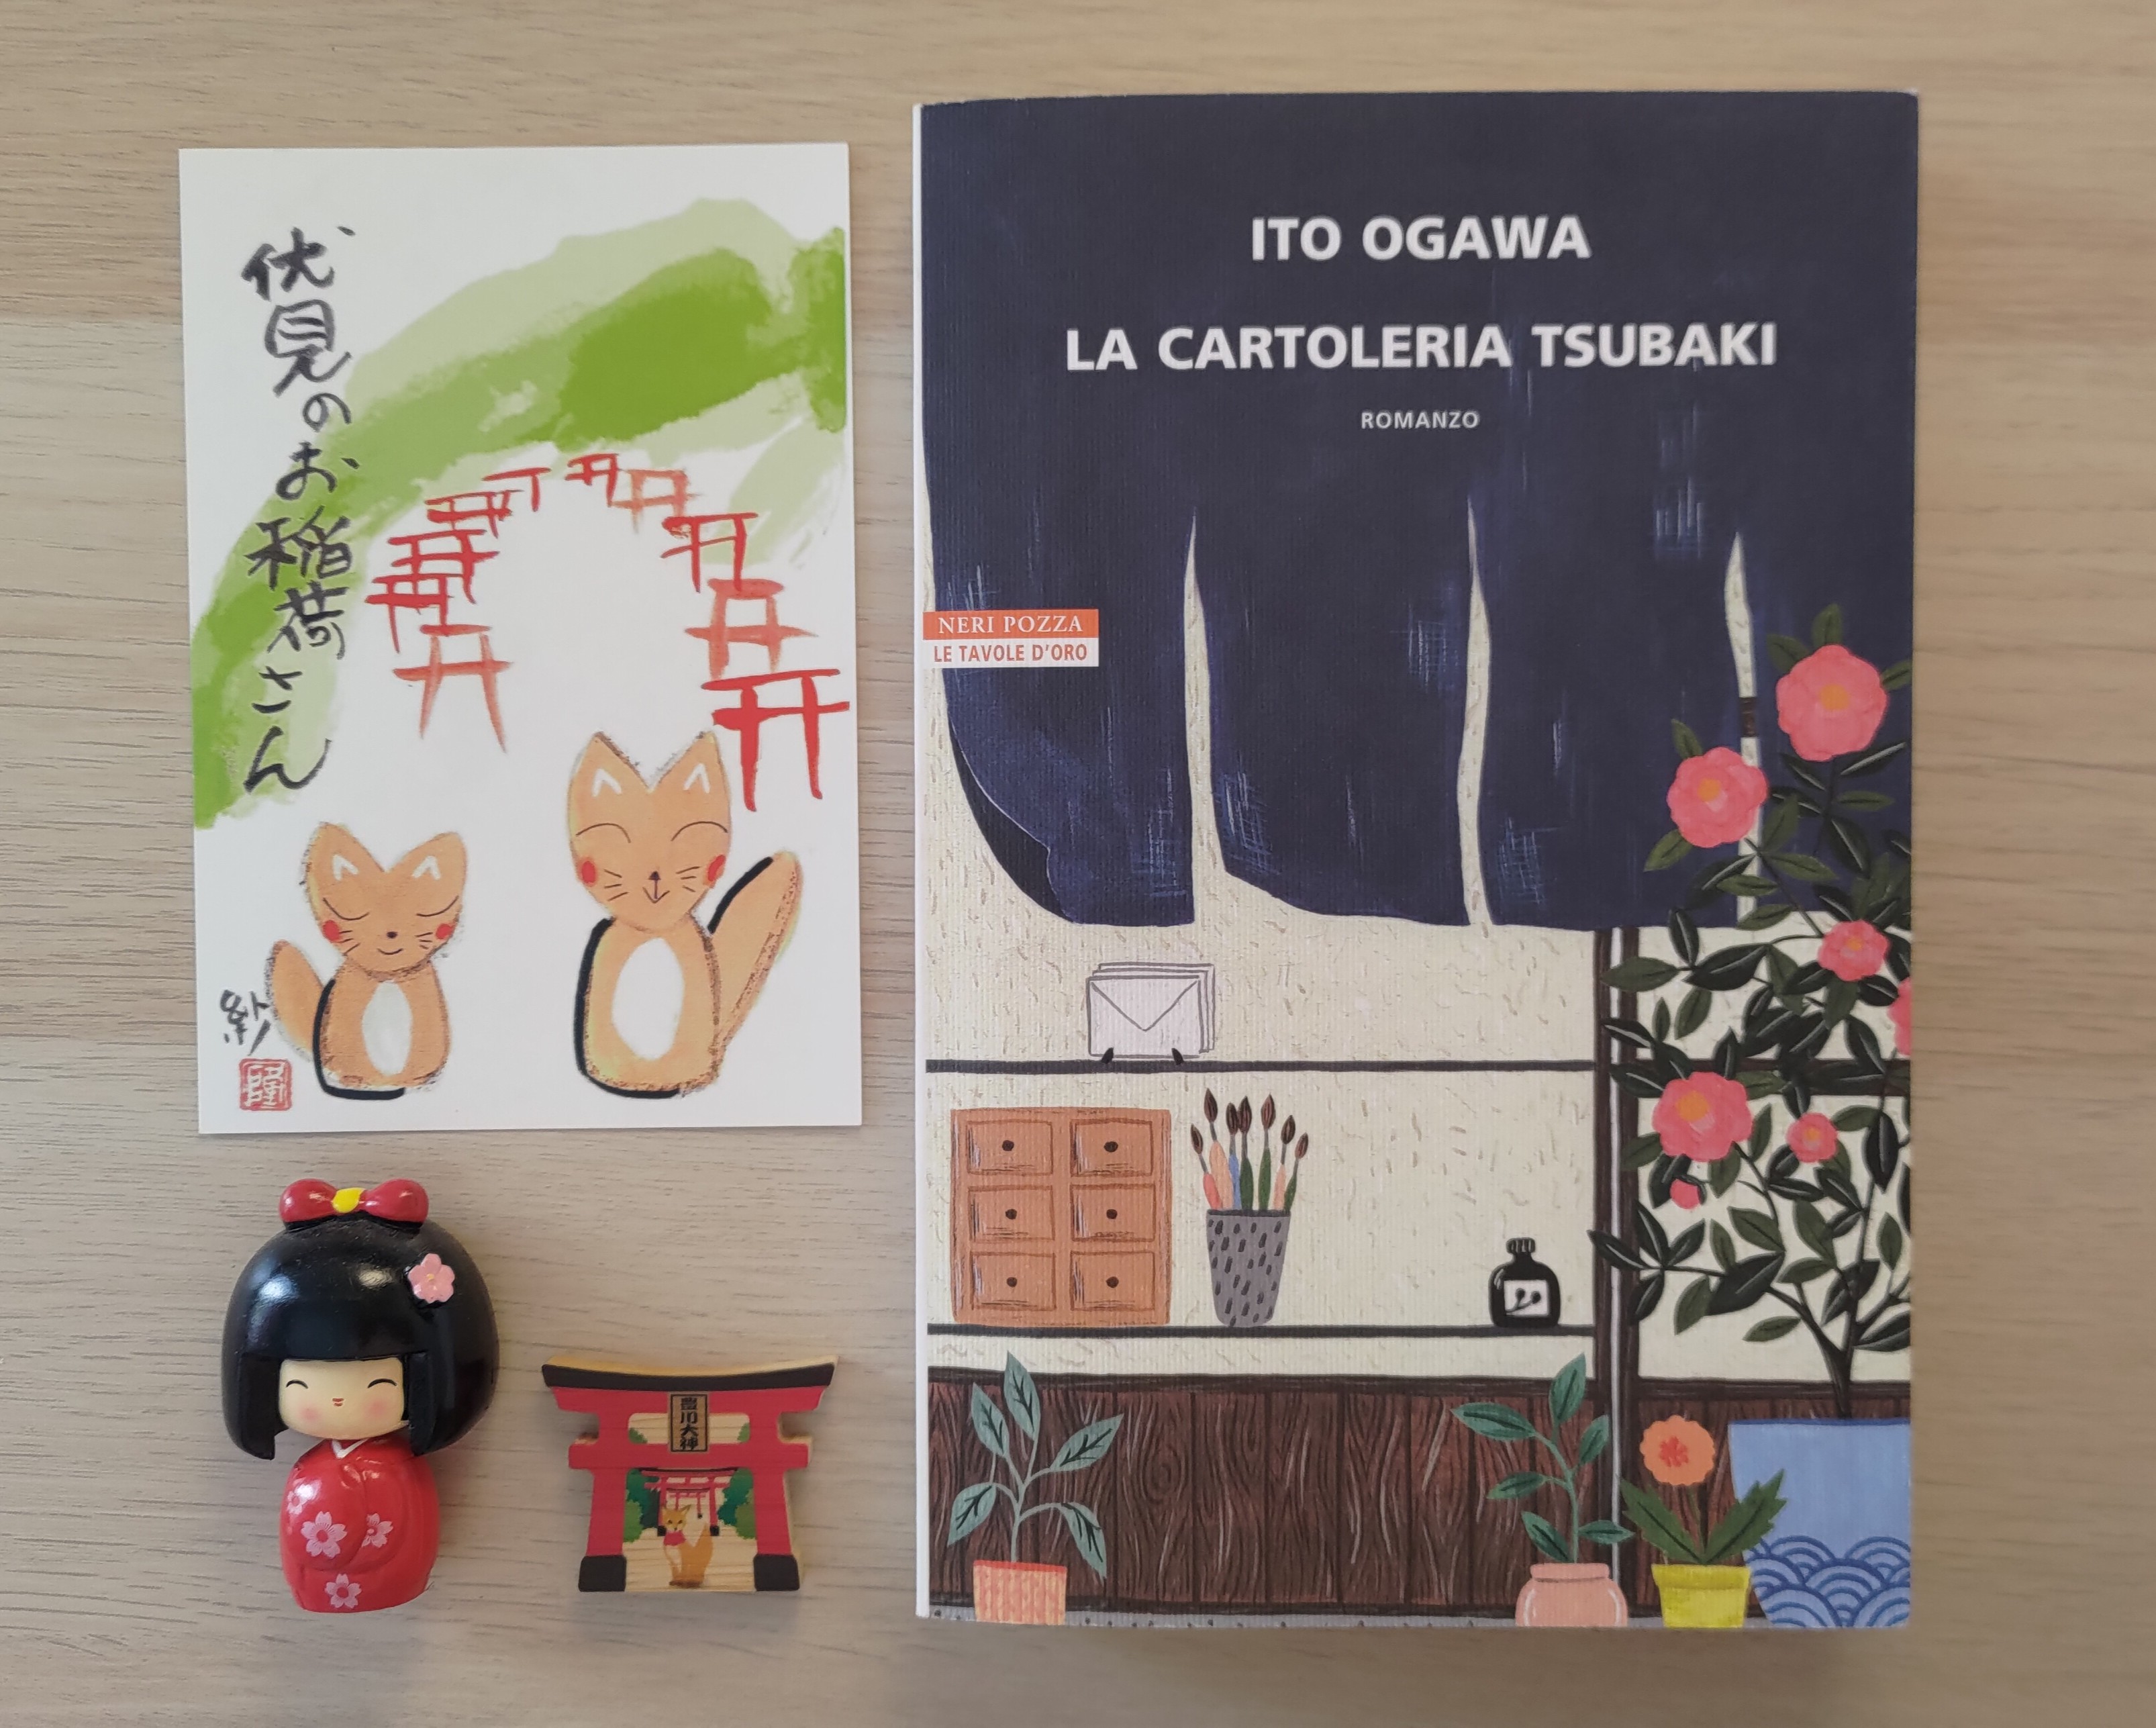 La cartoleria Tsubaki - Ito Ogawa